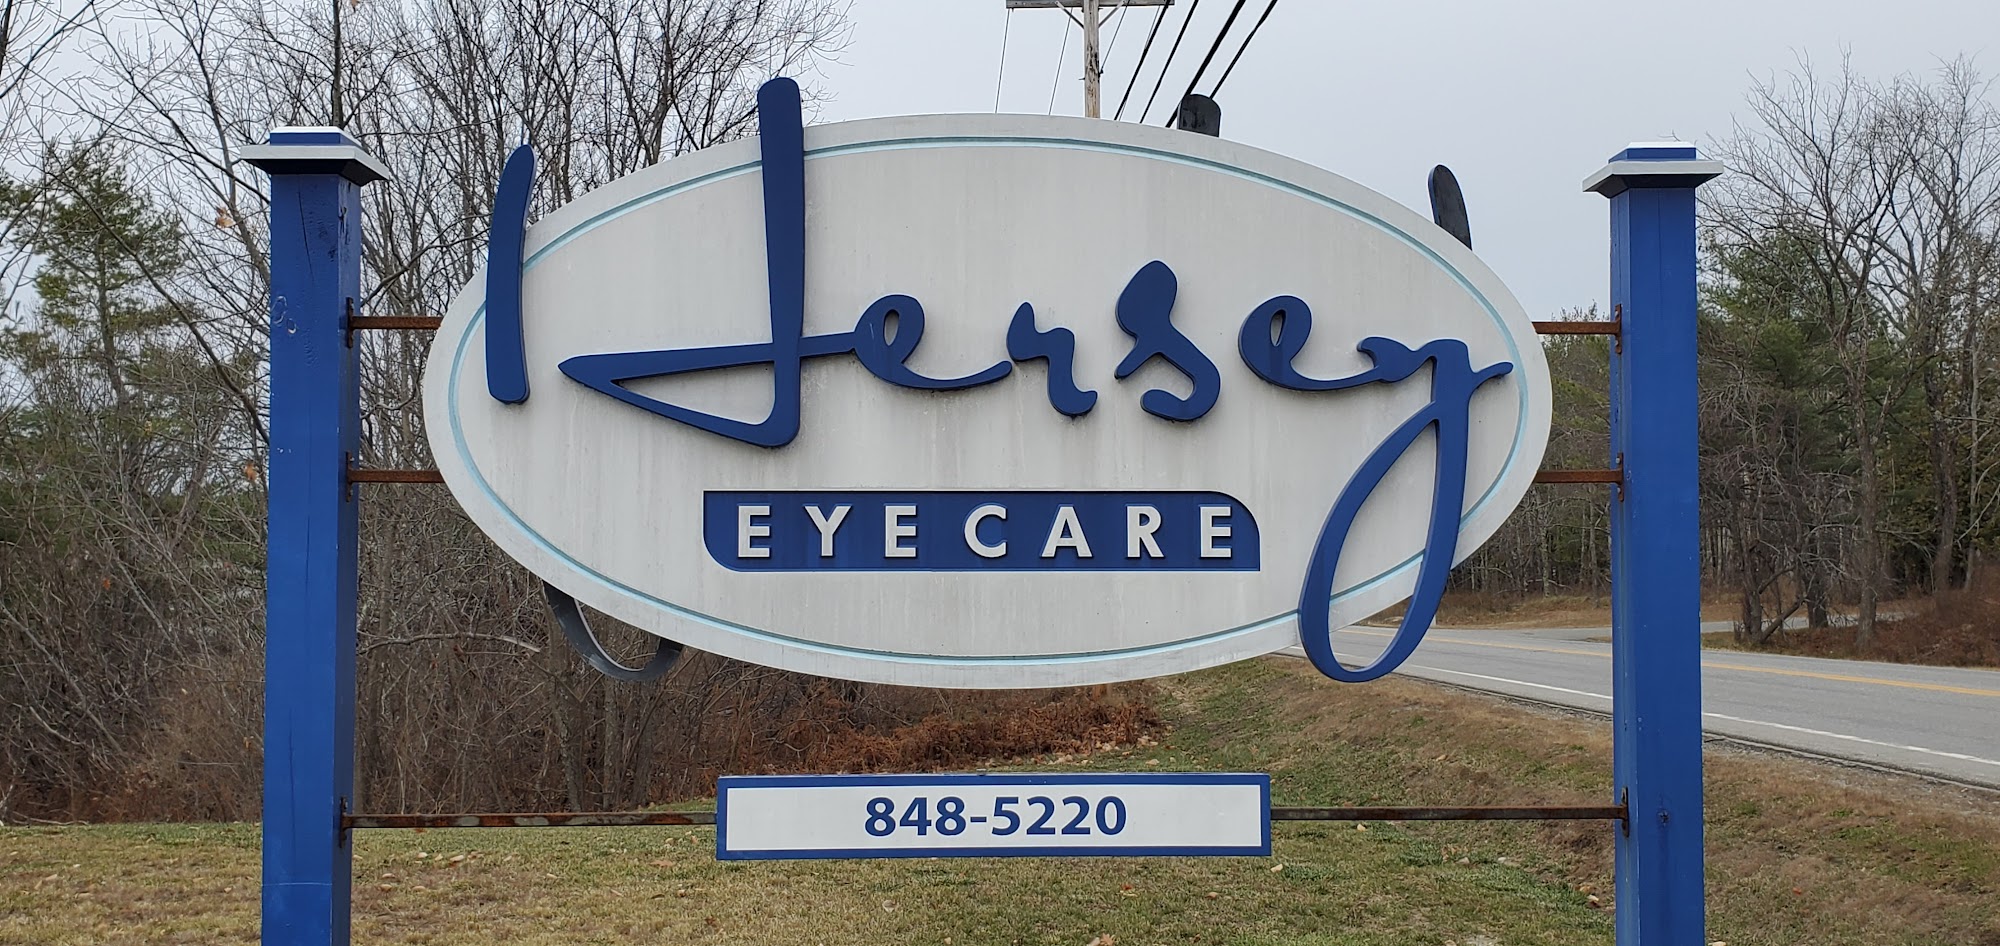 Hersey EyeCare 2350 US-2, Hermon Maine 04401